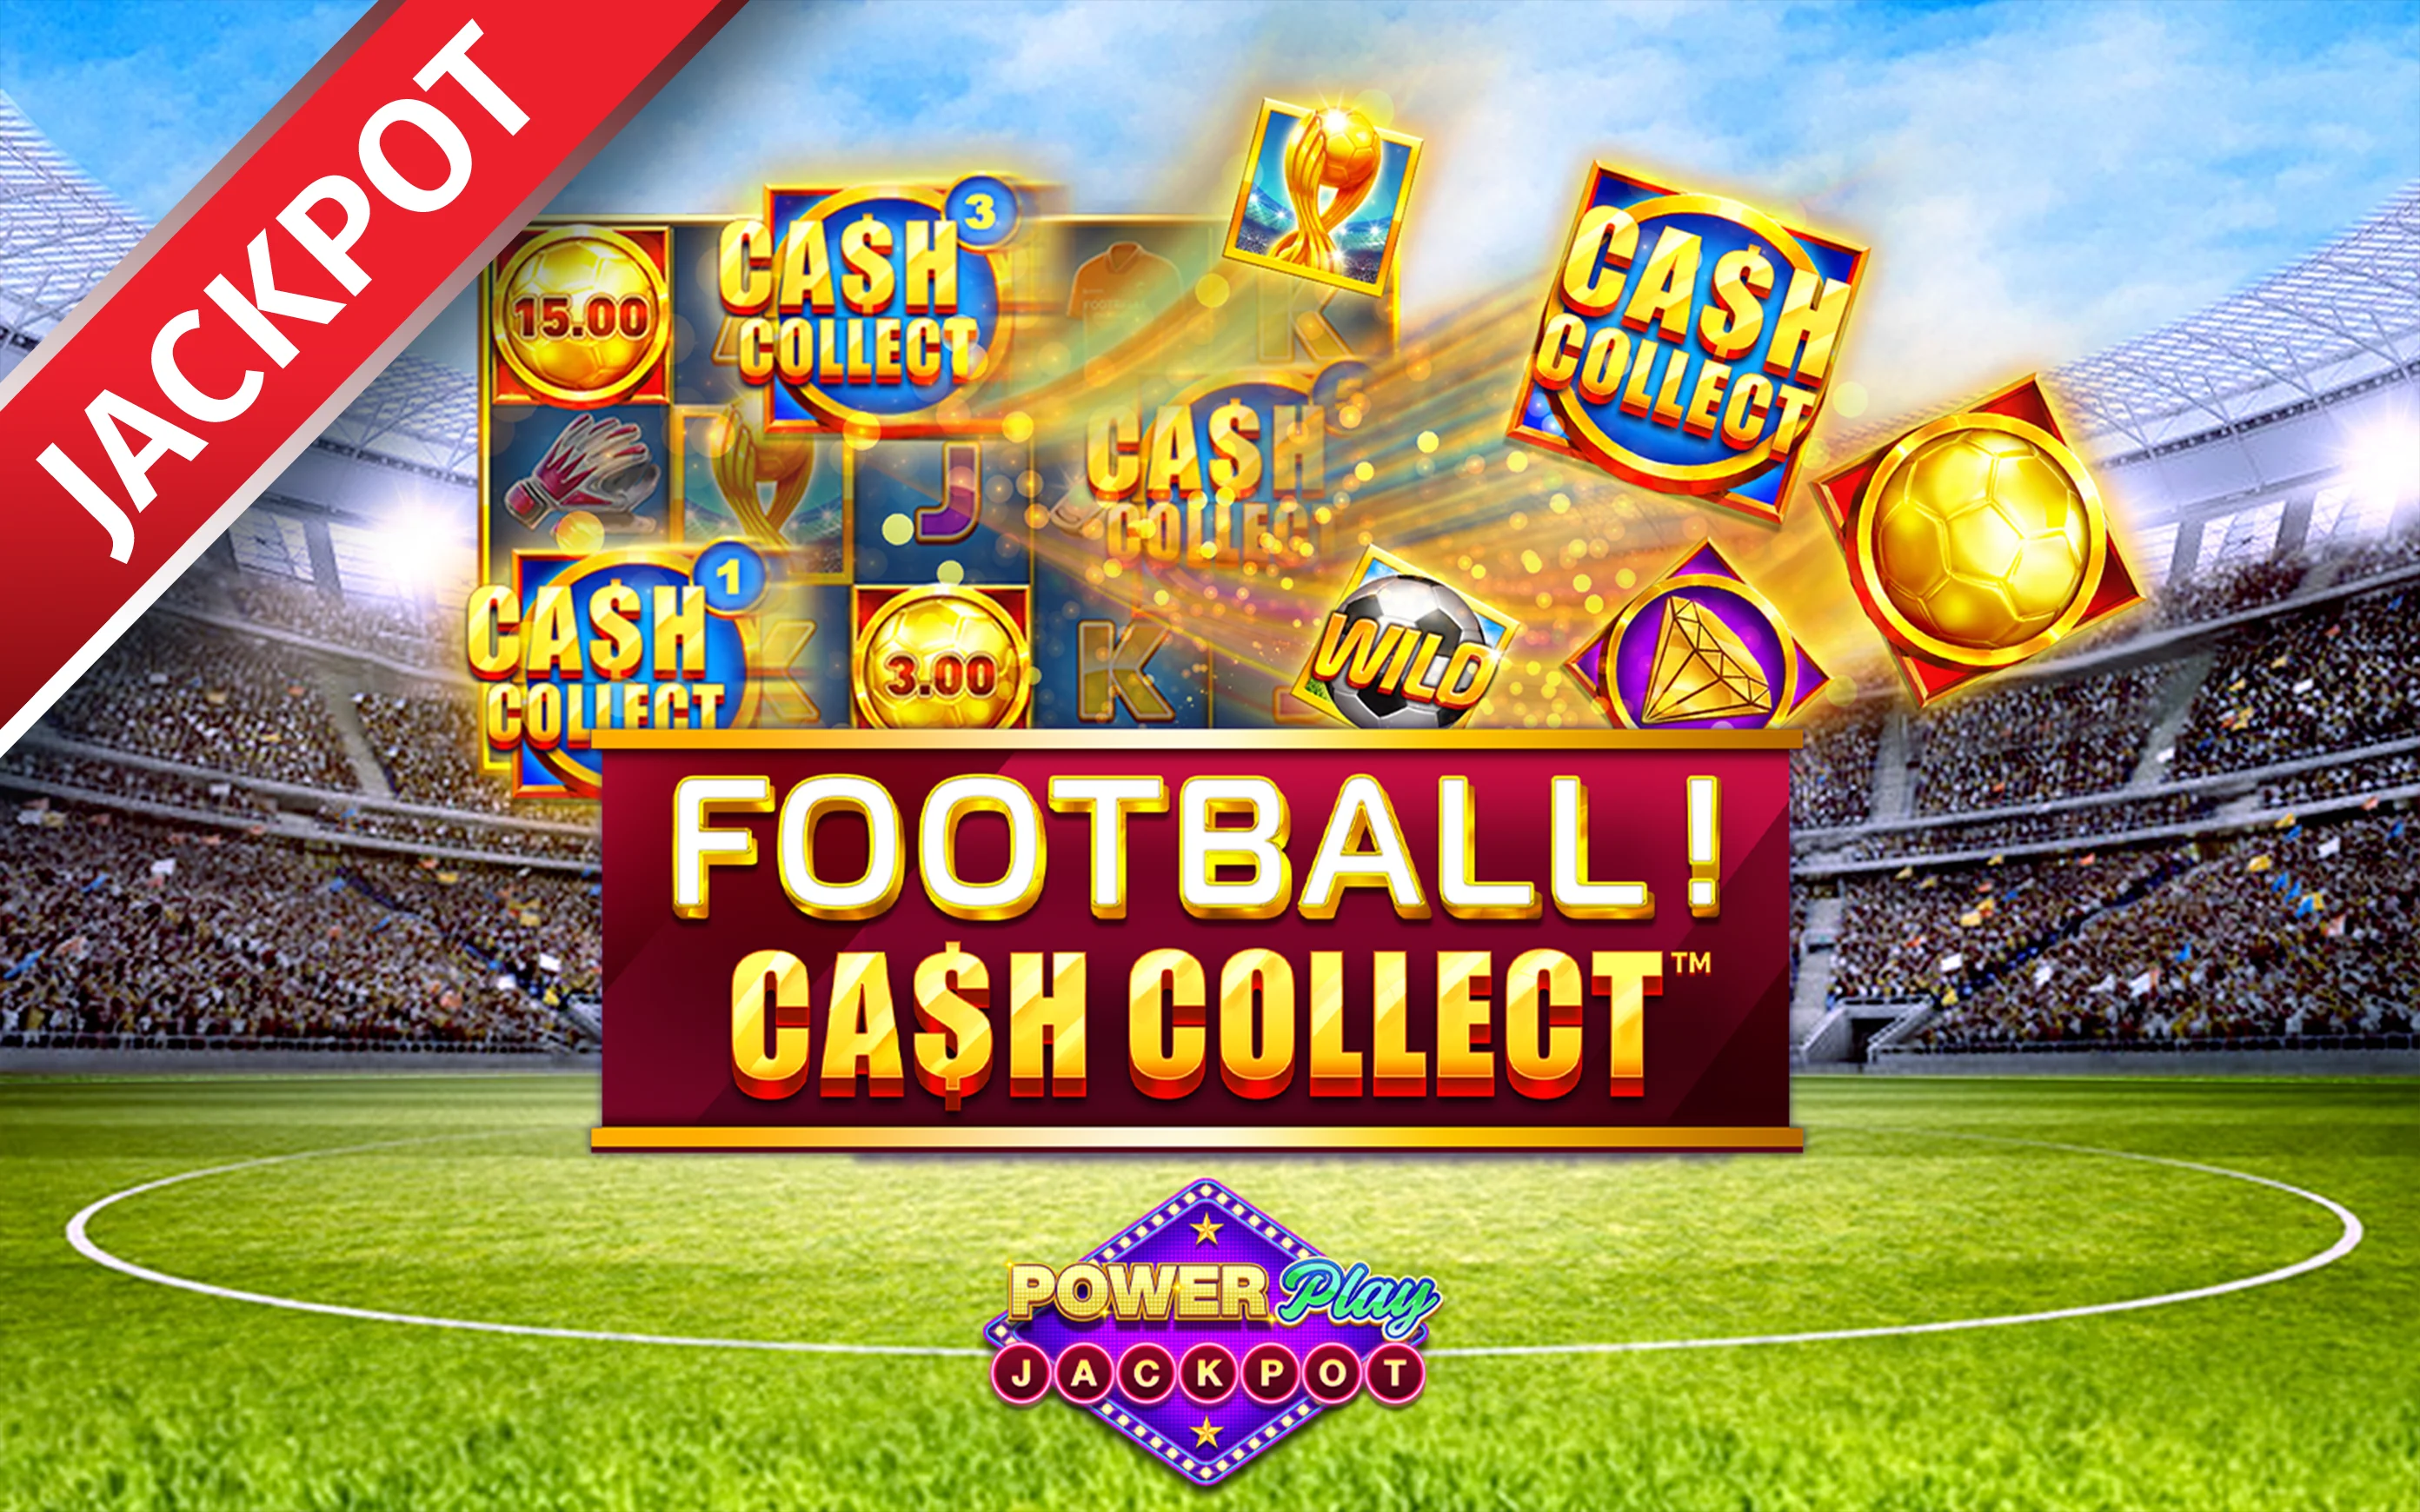 Jouer à Football! Cash Collect™ PowerPlay Jackpot sur le casino en ligne Starcasino.be